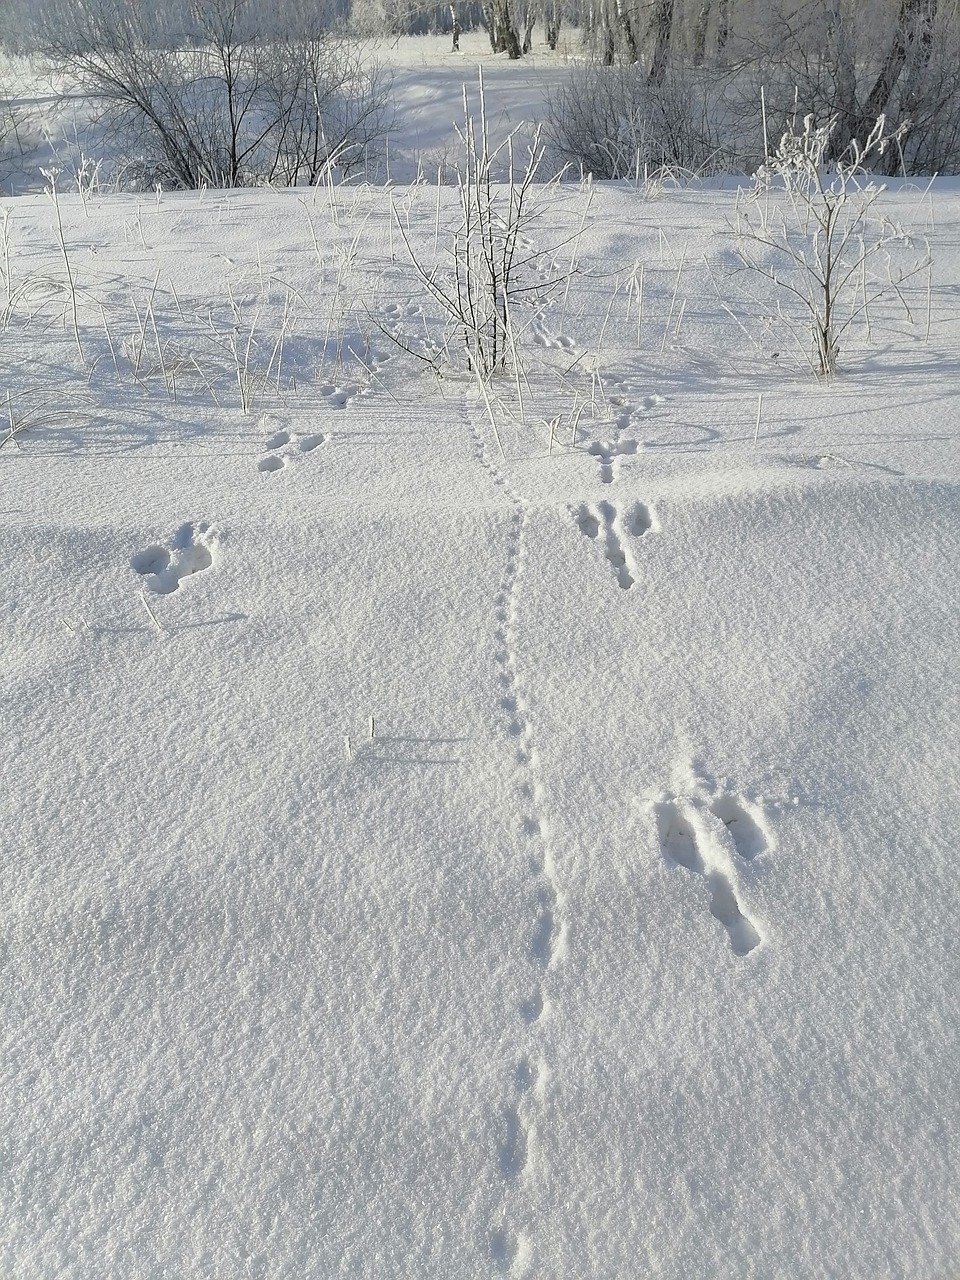 Видны заячьи следы. Следы зайца беляка. Следы зайца на снегу. Следы зайца беляка на снегу. Заячьи следы.